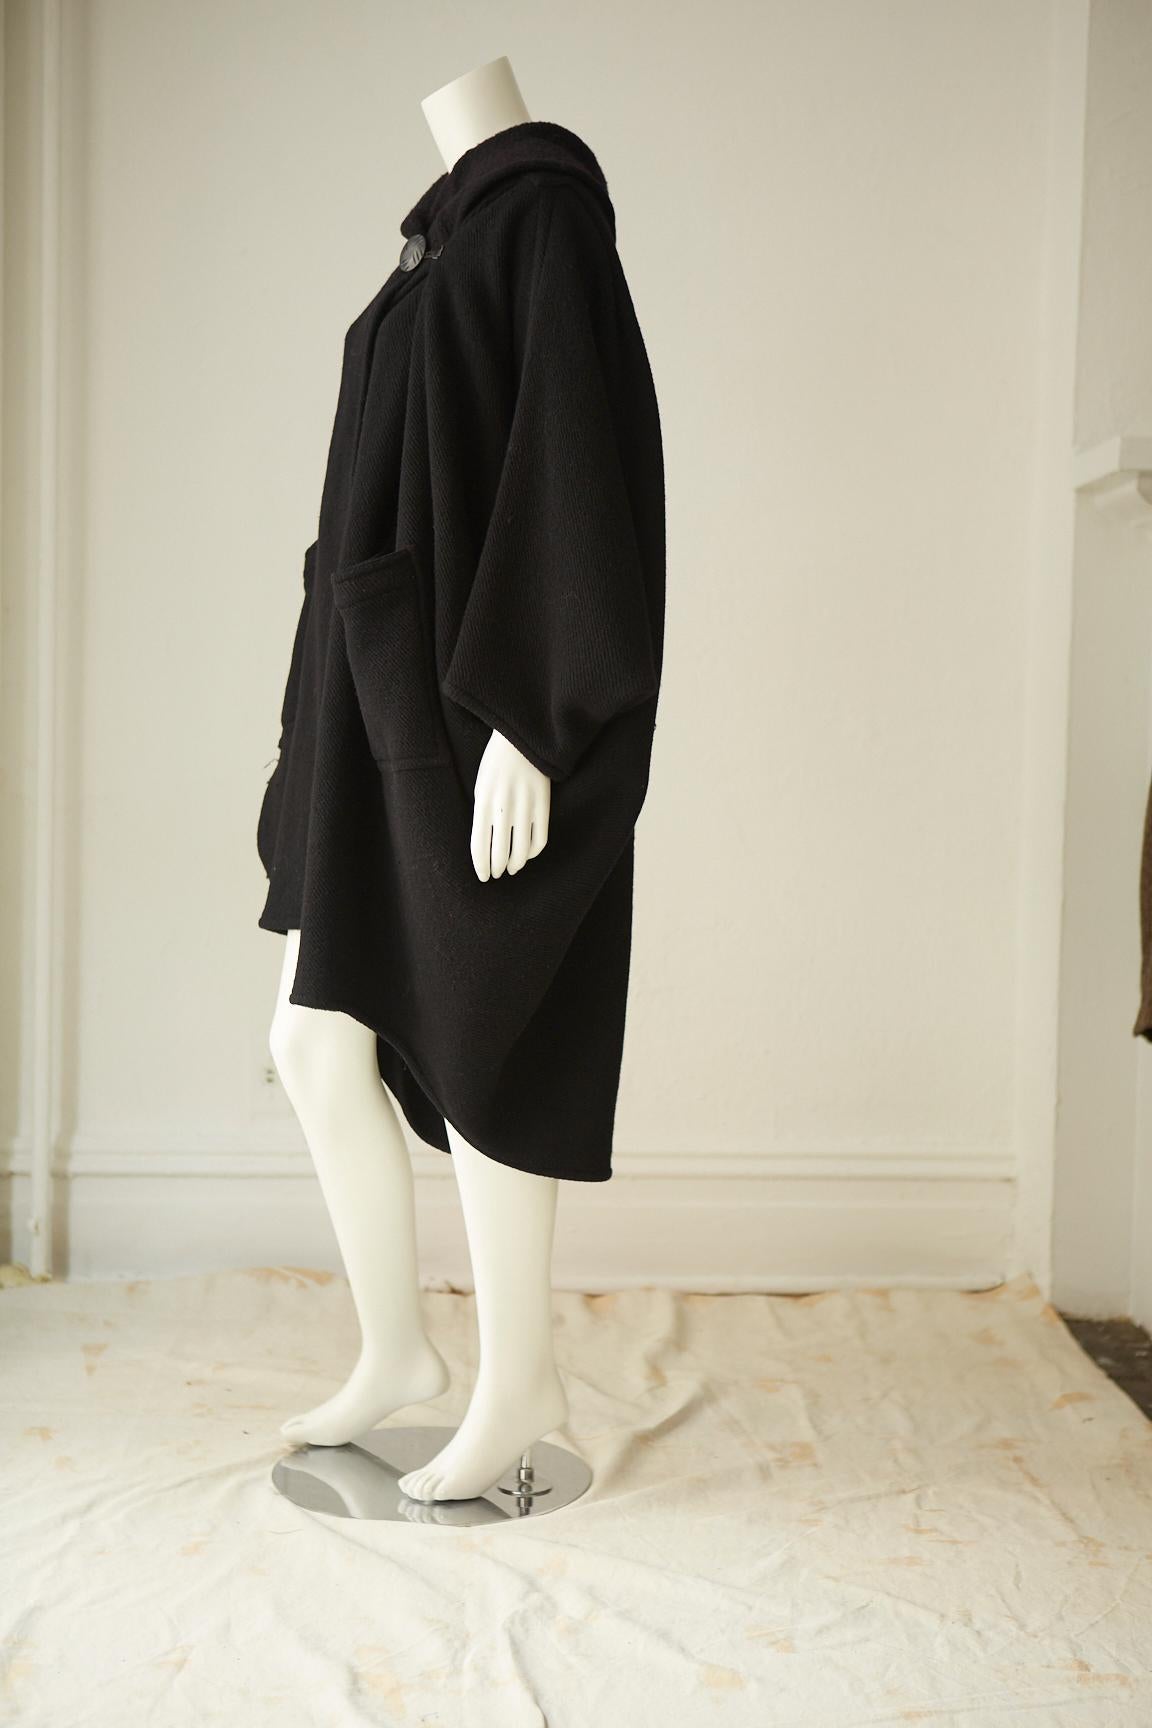 Rare manteau papillon en laine noire Issey Miyake avec étiquette originale.
Fermeture à bouton au centre du devant.
Taille unique.